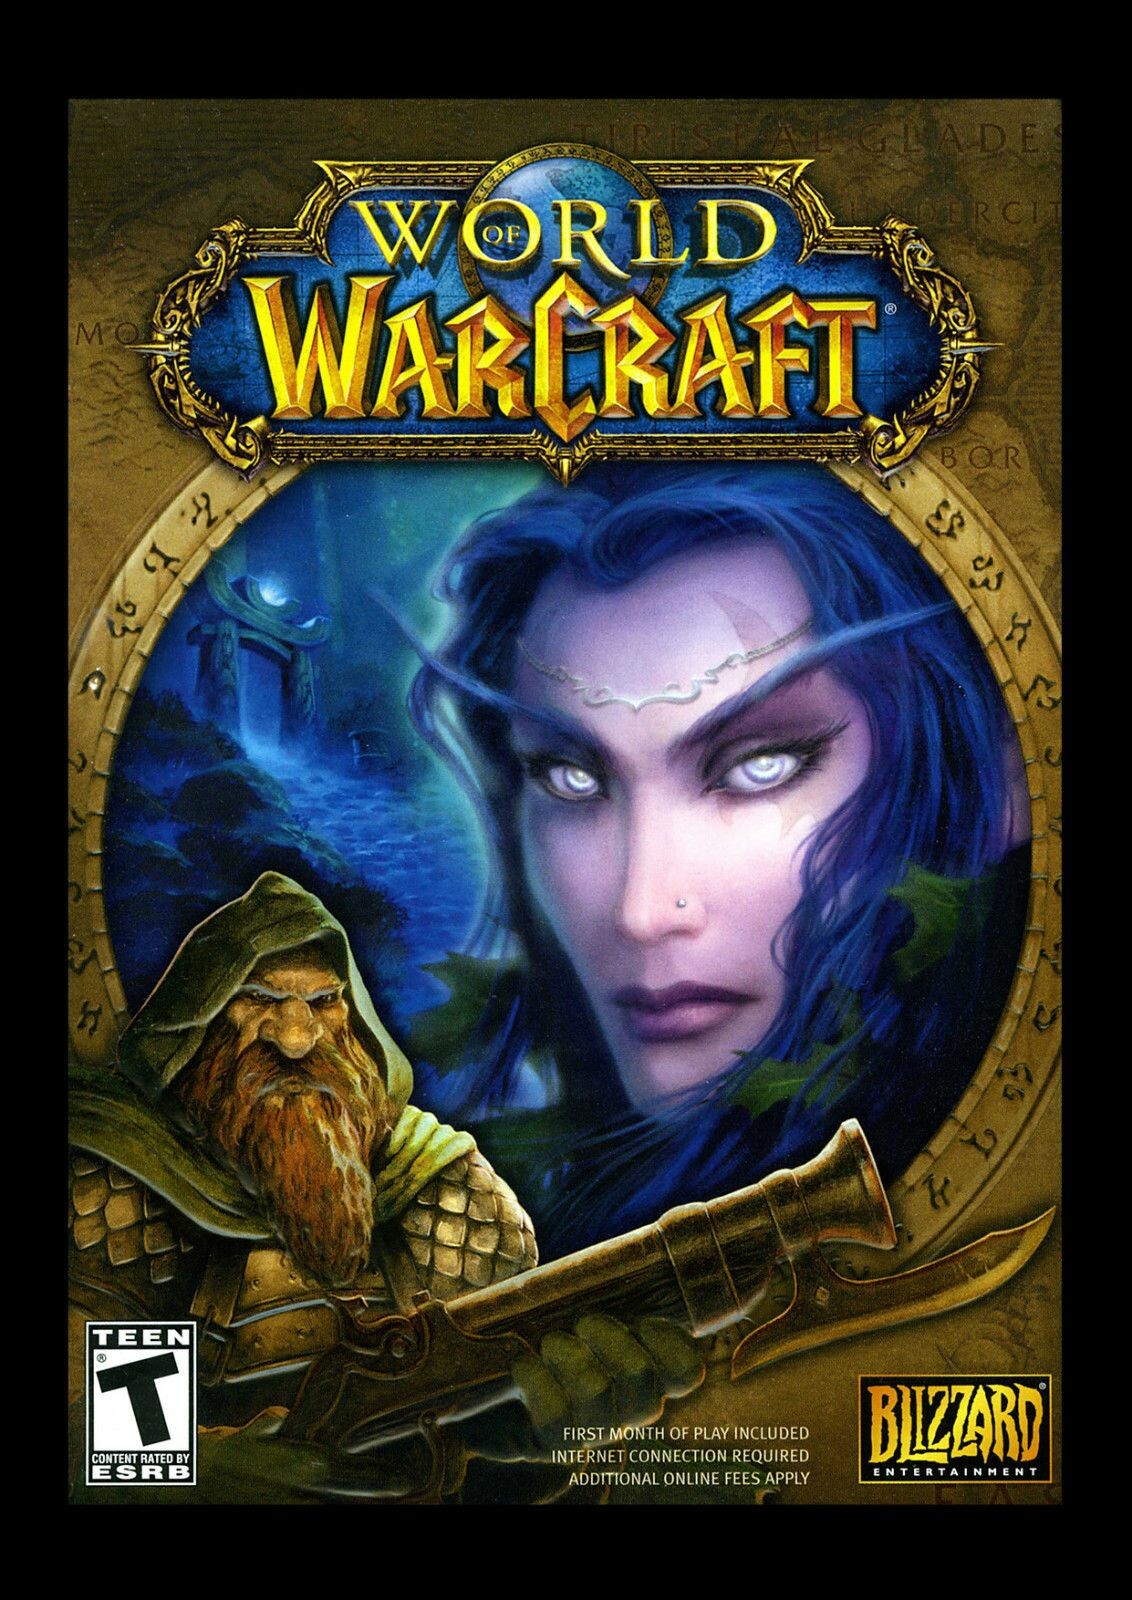 World of Warcraft- Art Assets